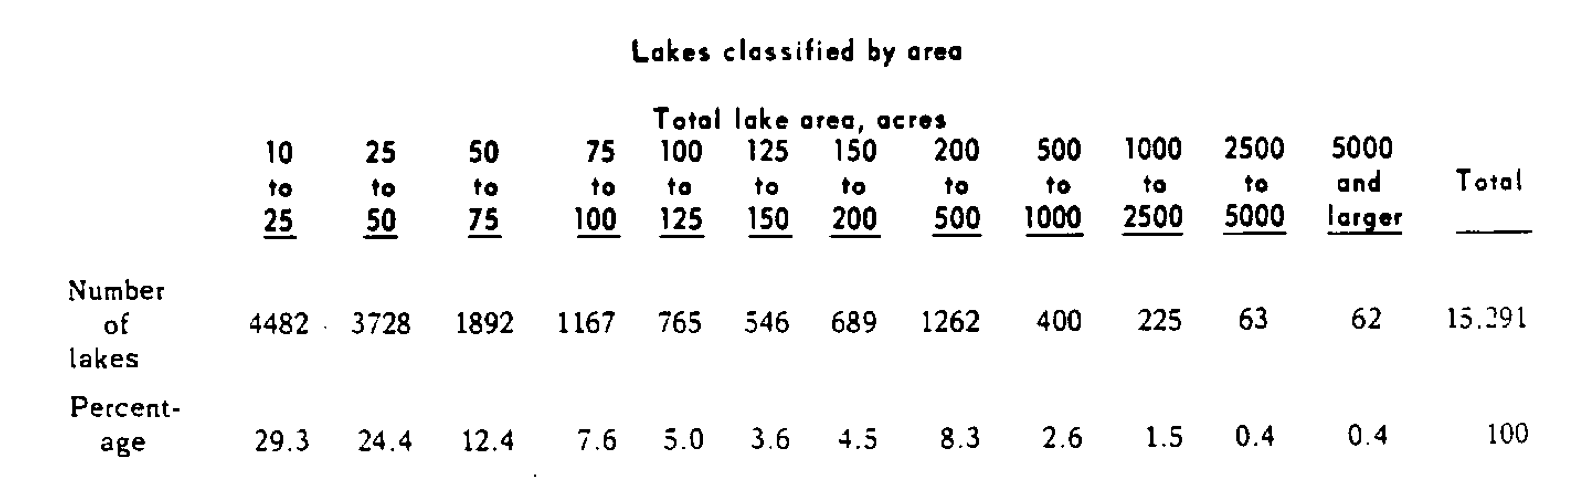 lakes-summary